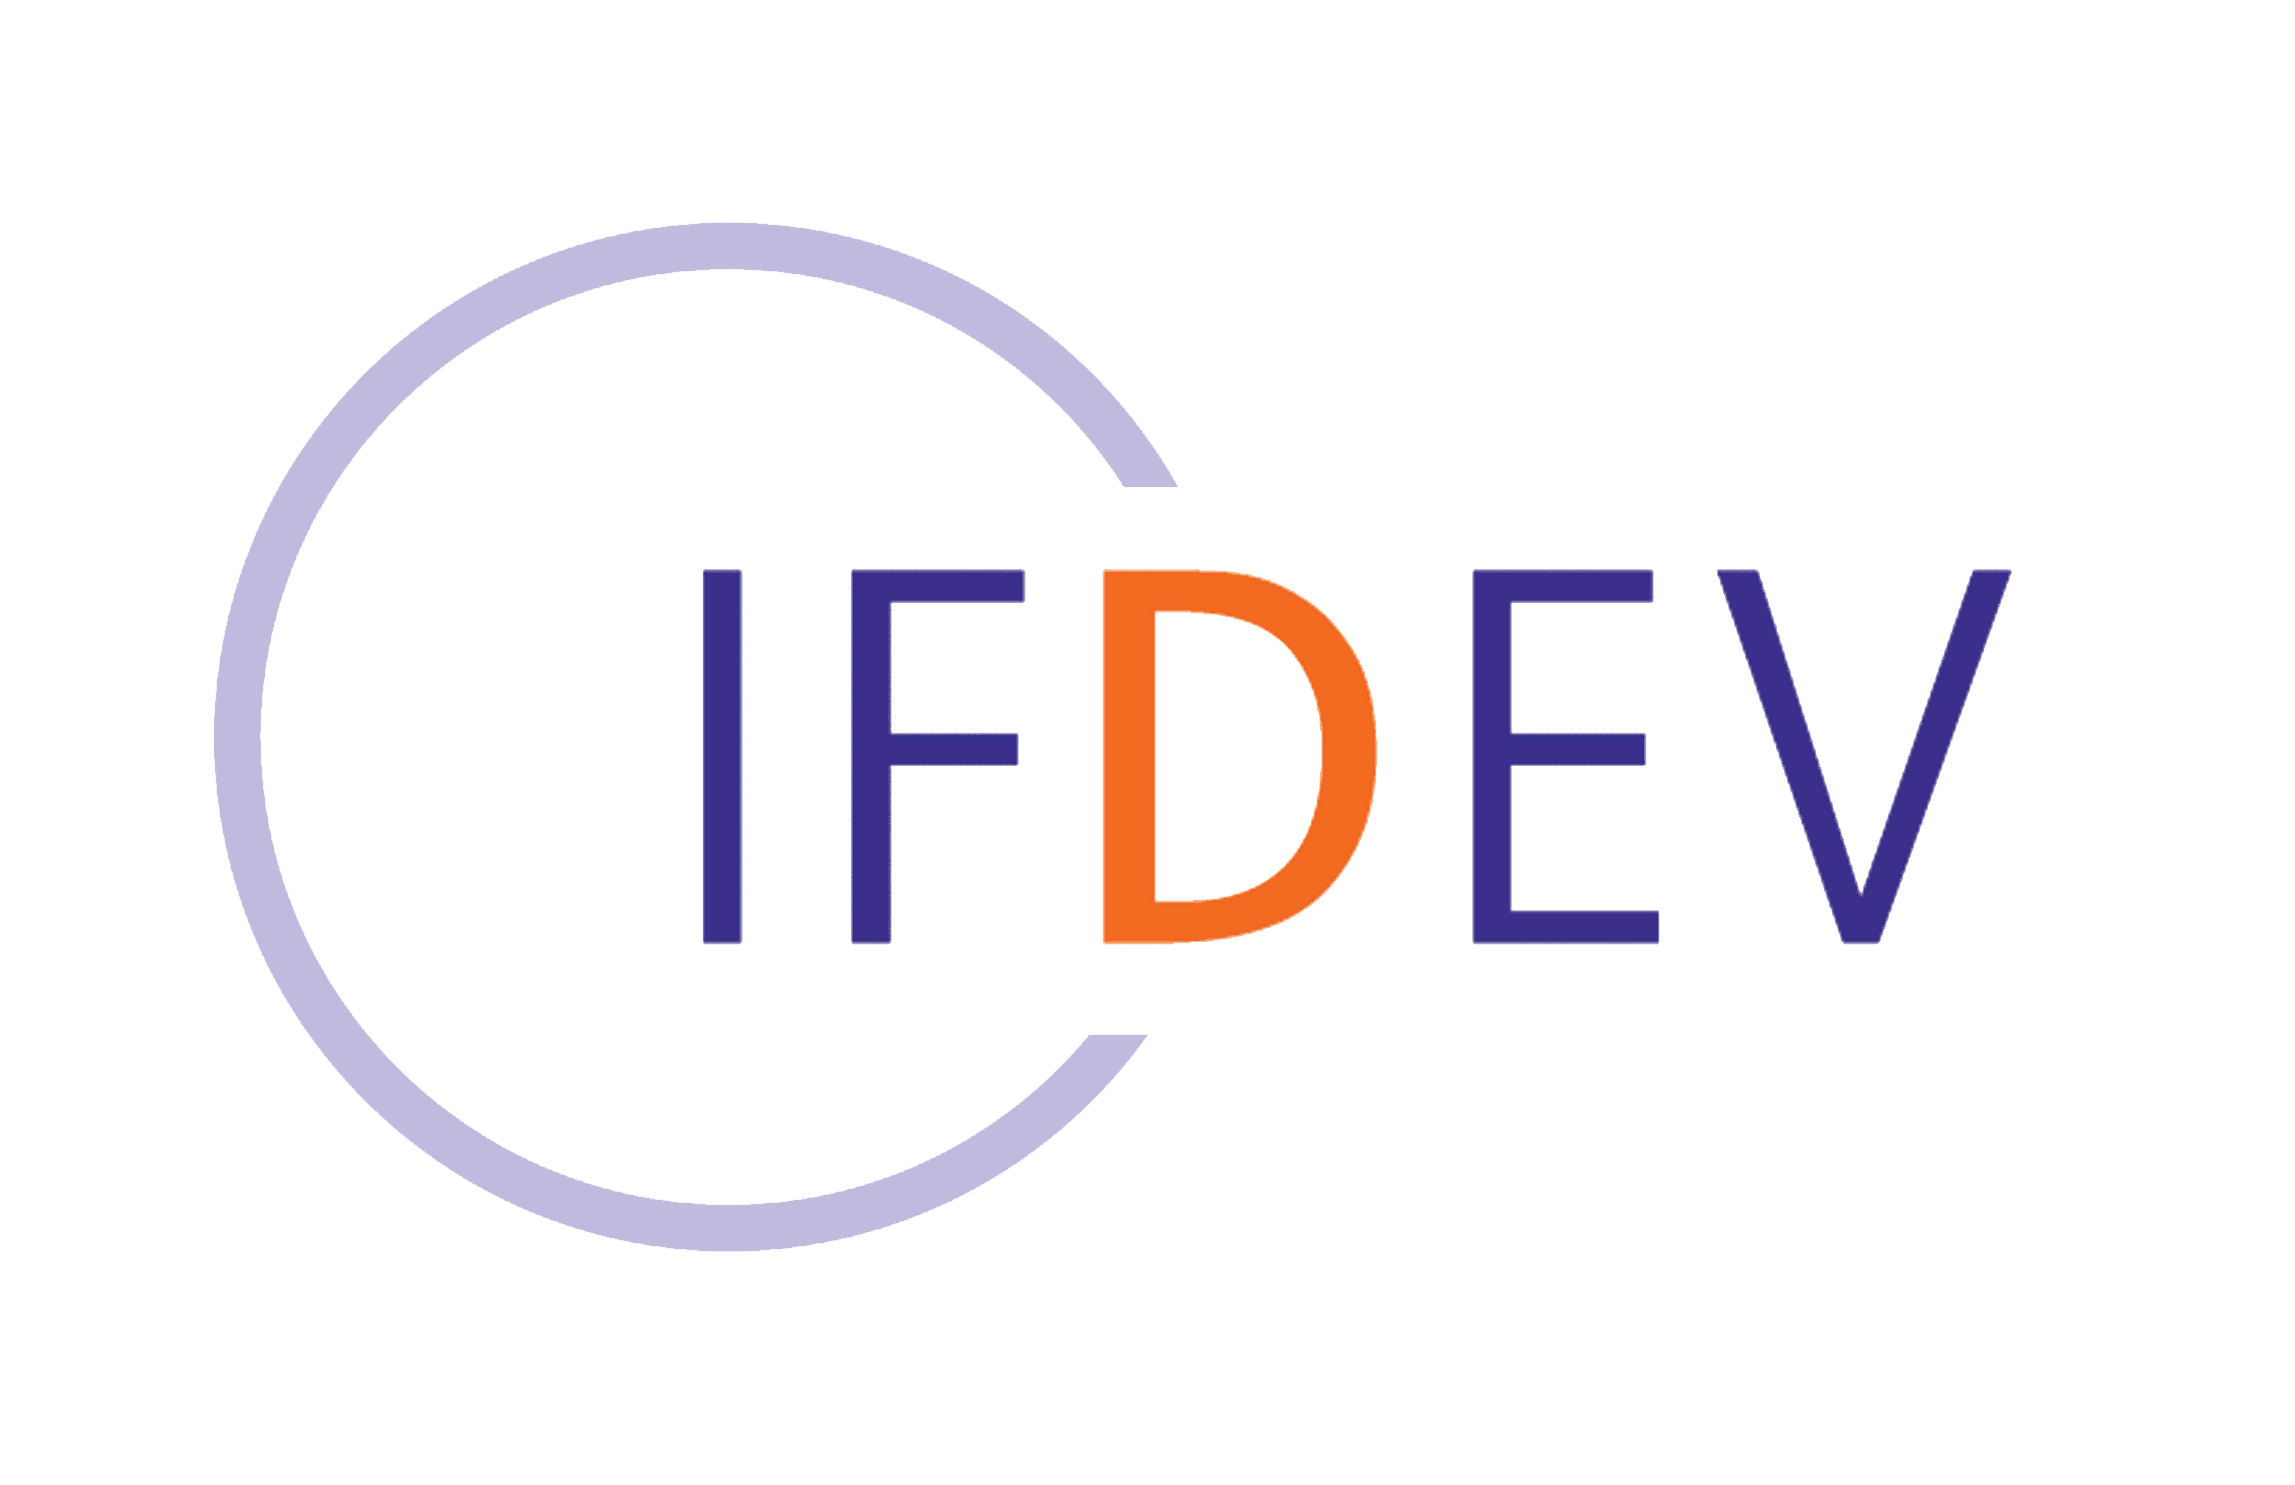 IFDEV – Institut de formation et développement